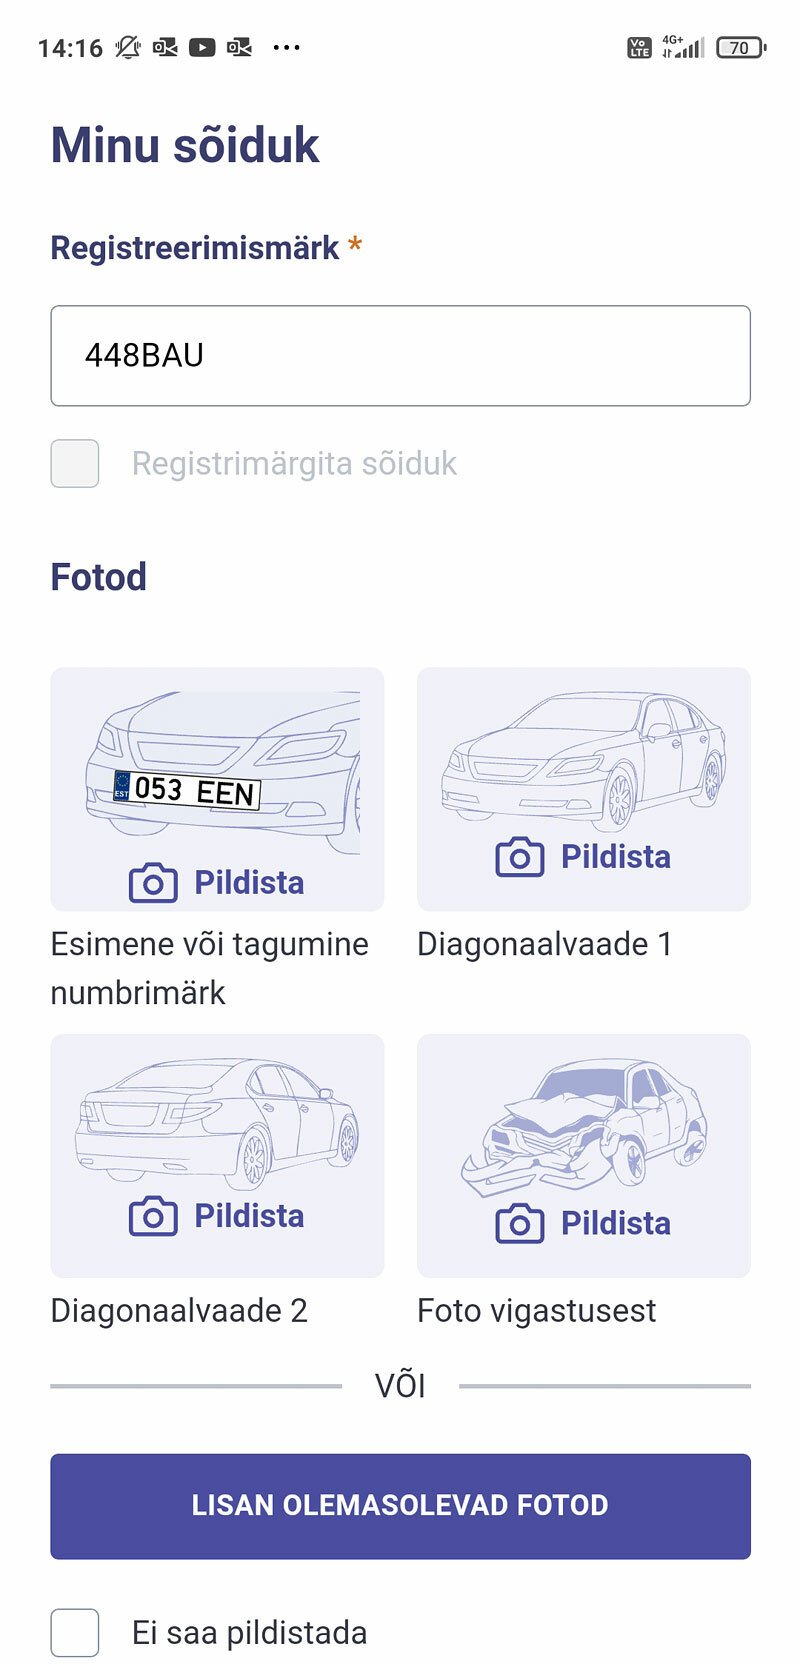 Díky obrázkům a celkově přehlednému designu se dá estonská aplikace vyplnit i v estonštině, ačkoliv jí nevládnete. Pro větší pohodlí si ale může uživatel vybrat ještě ruštinu a angličtinu.